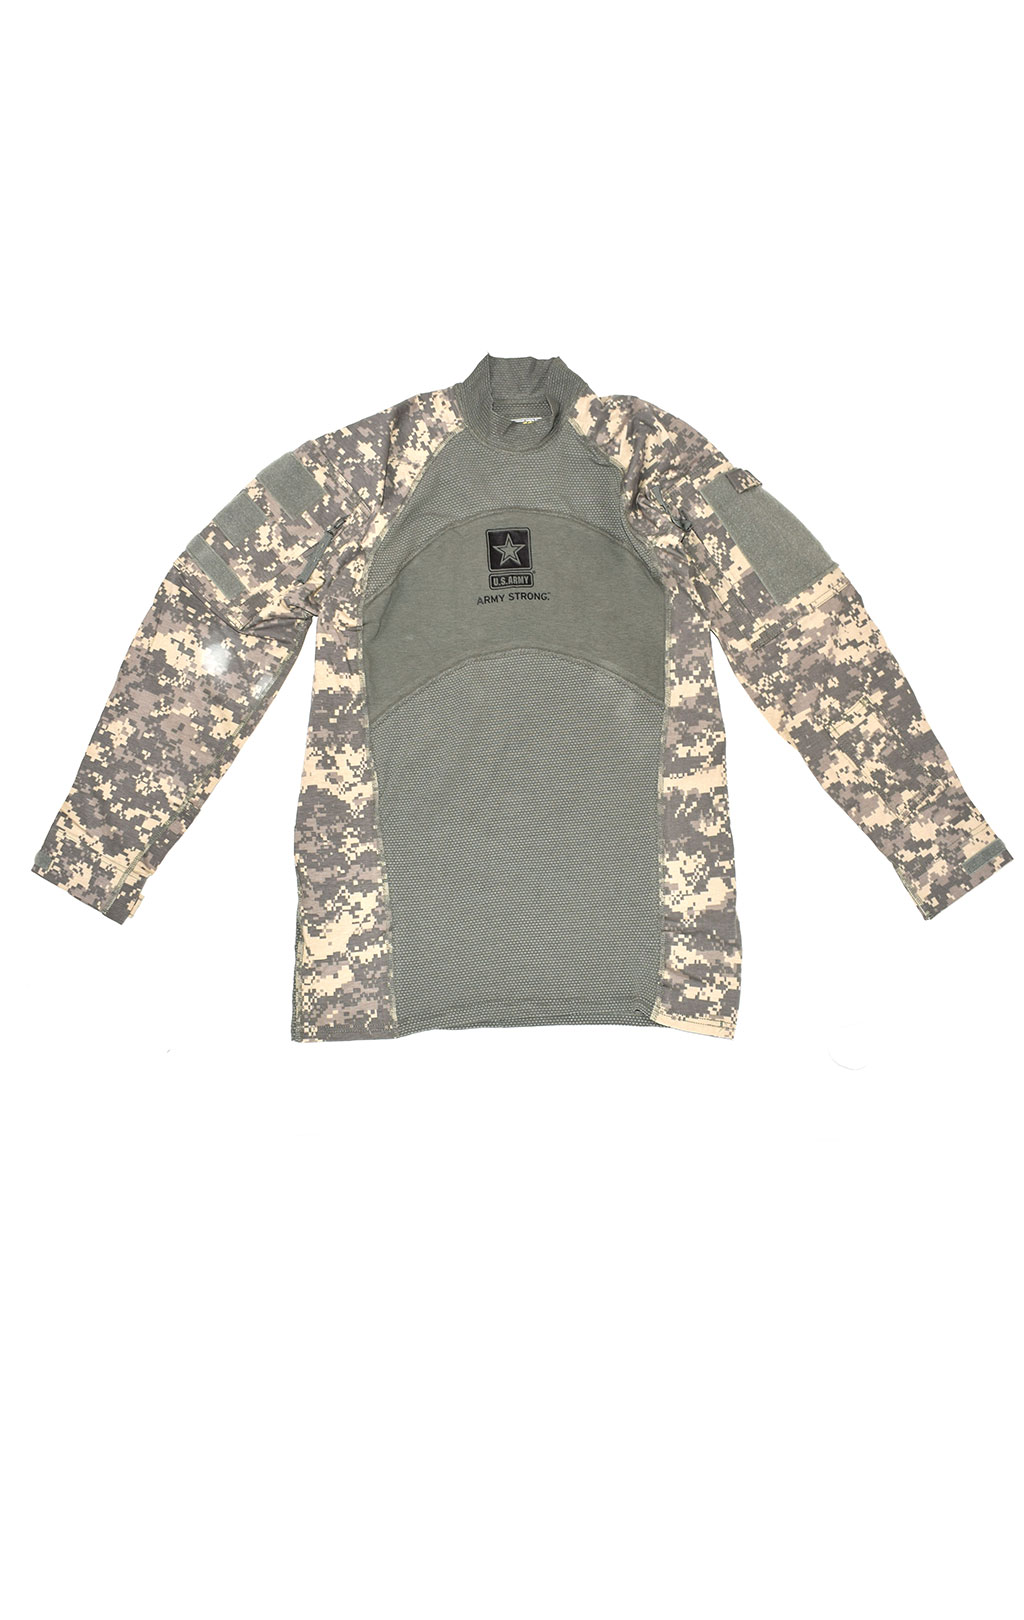 Рубашка Combat Shirt acu б/у США